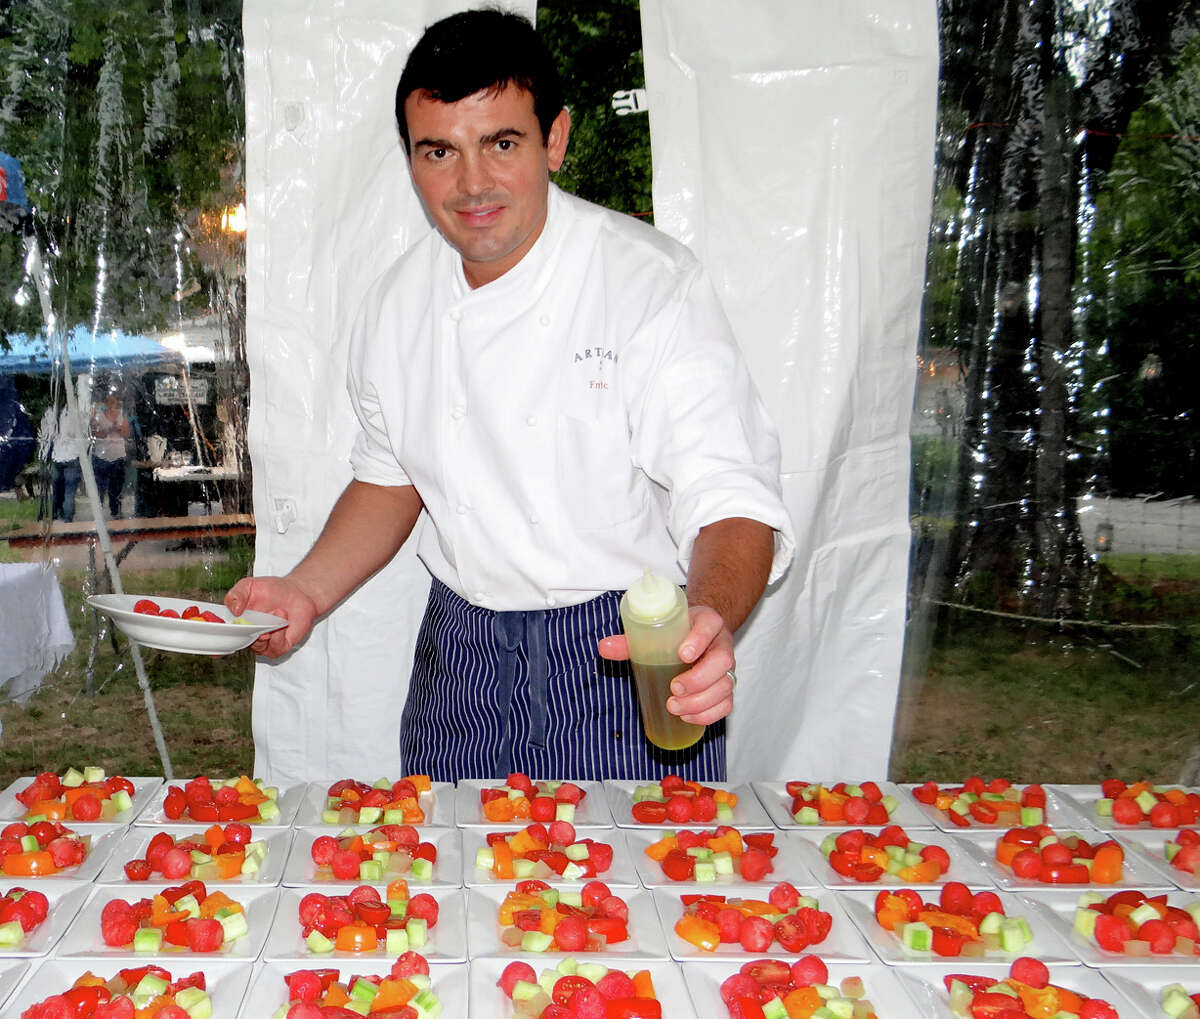 Chef Frederic Kieffer of Artisan Restaurant preparing late-summer tomato salads at Wakeman Town Farm's Harvest Fest dinner.